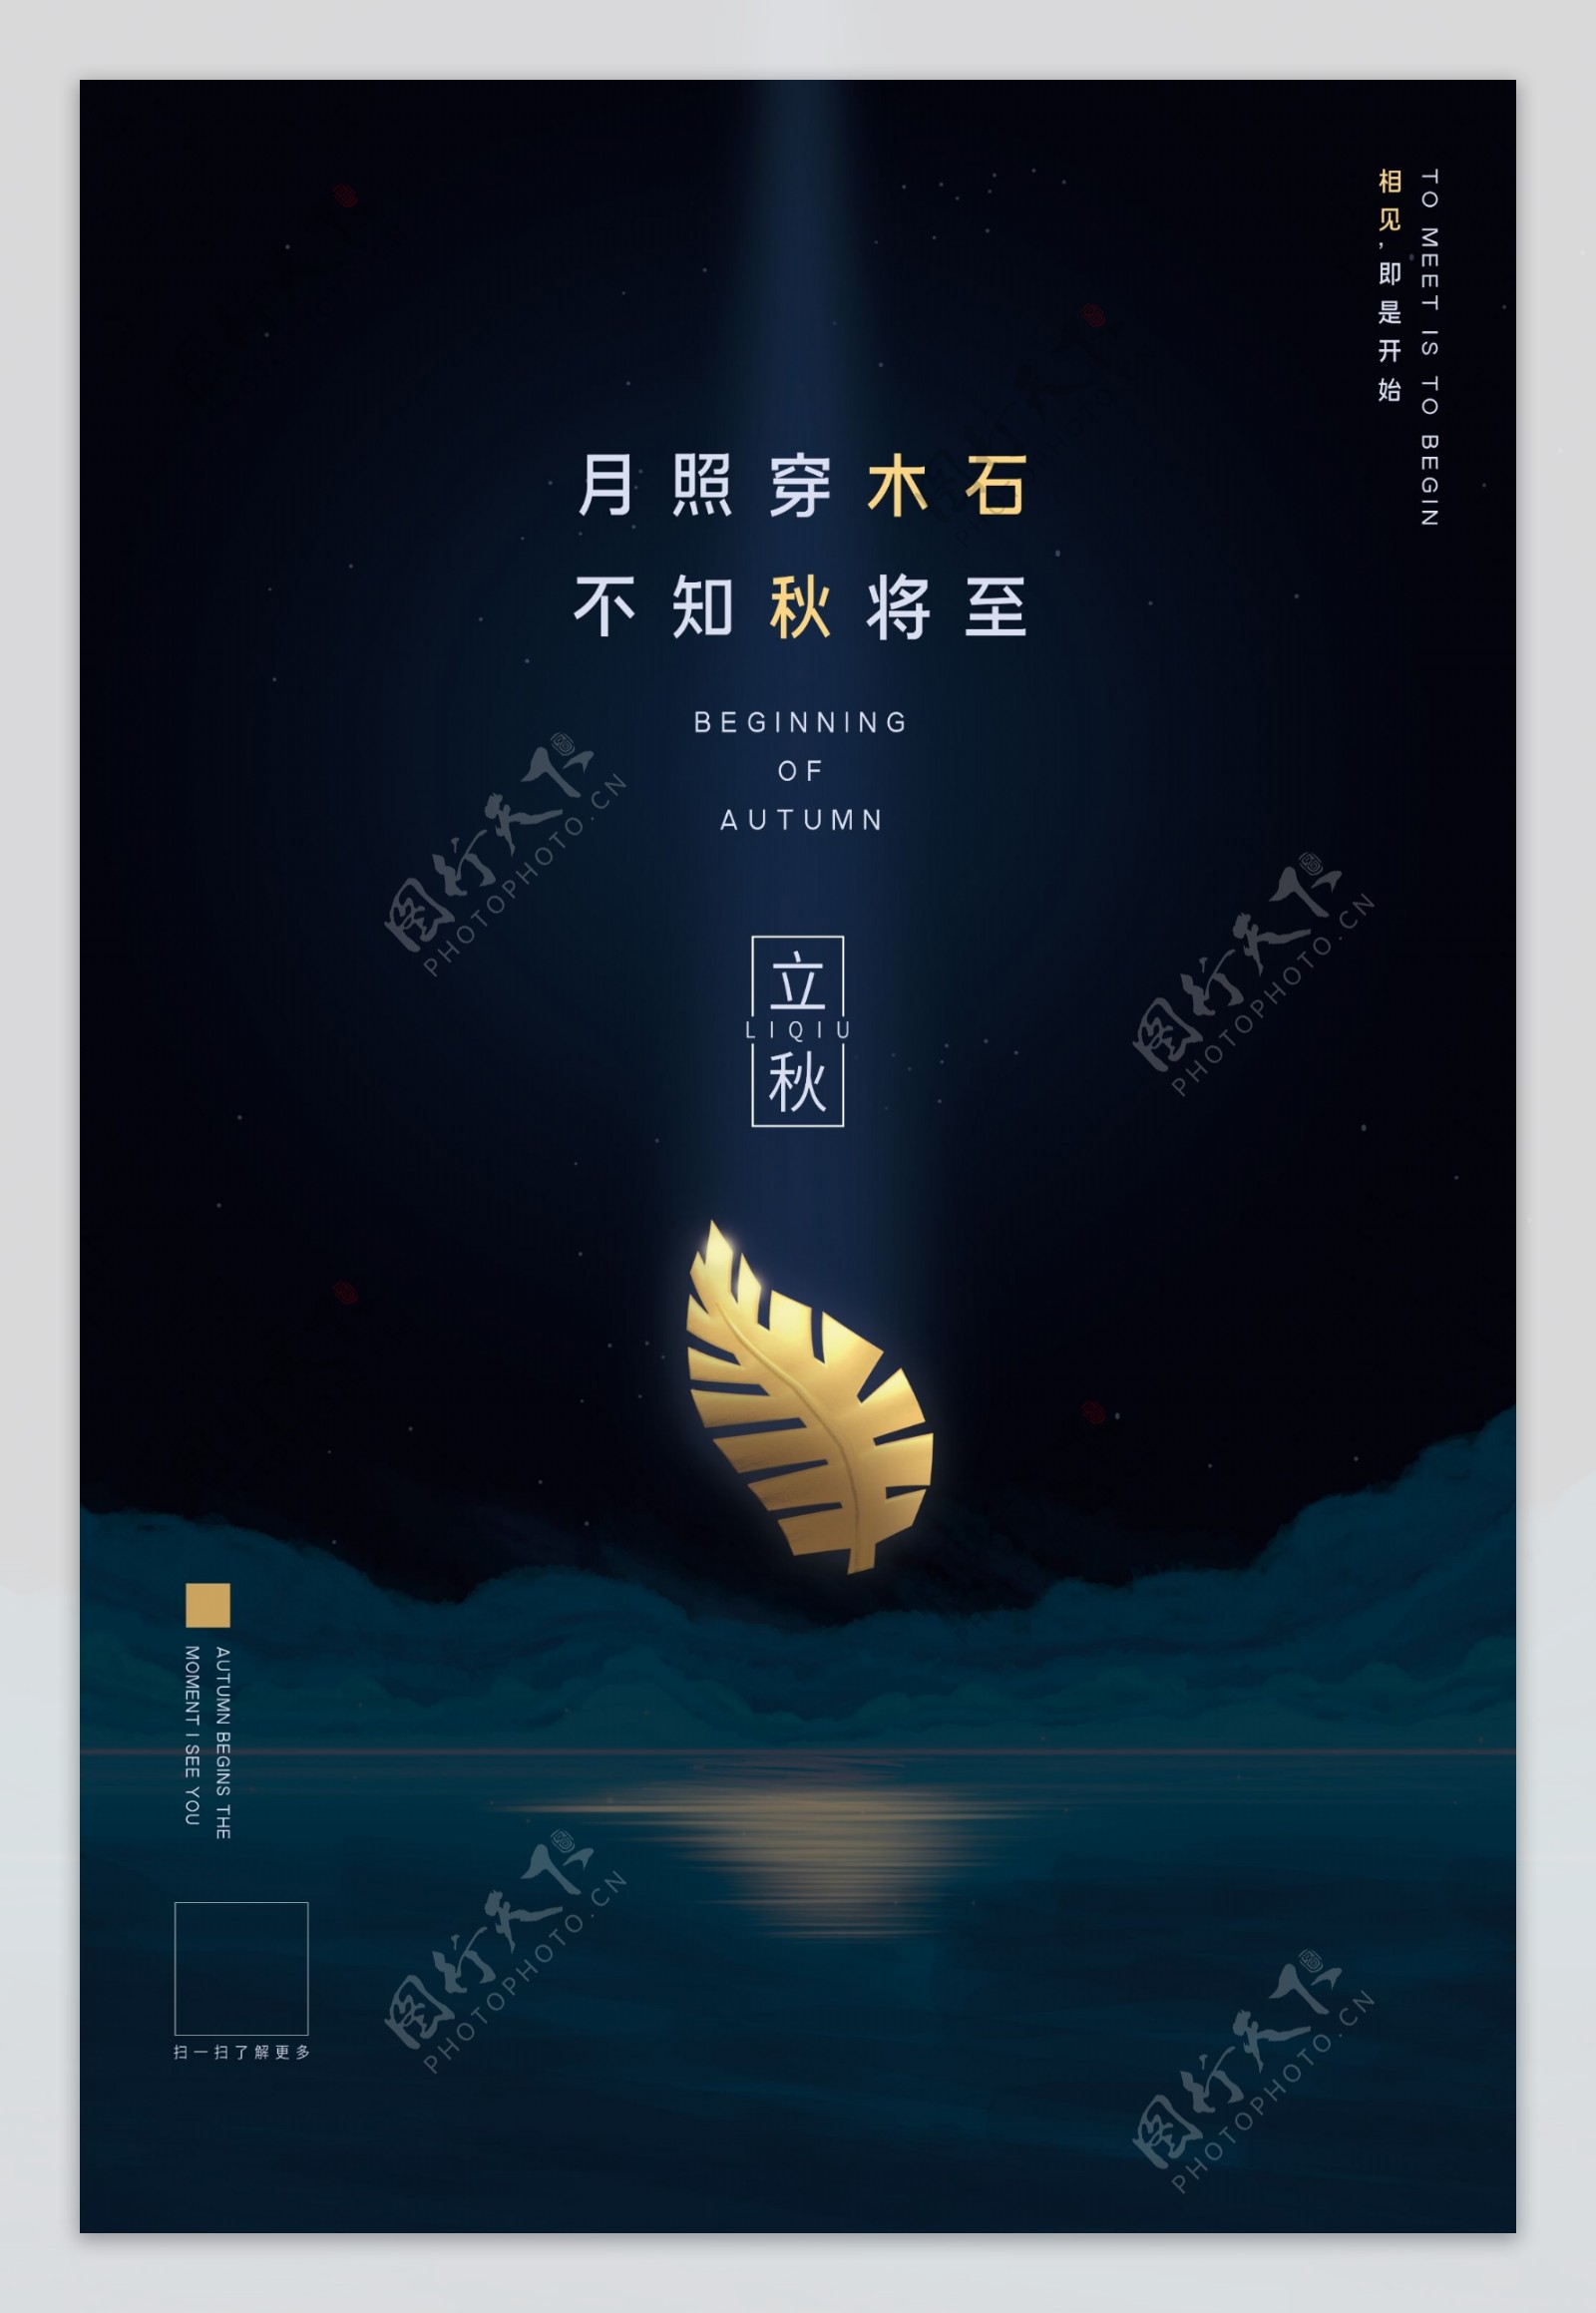 立秋节日传统促销活动宣传海报